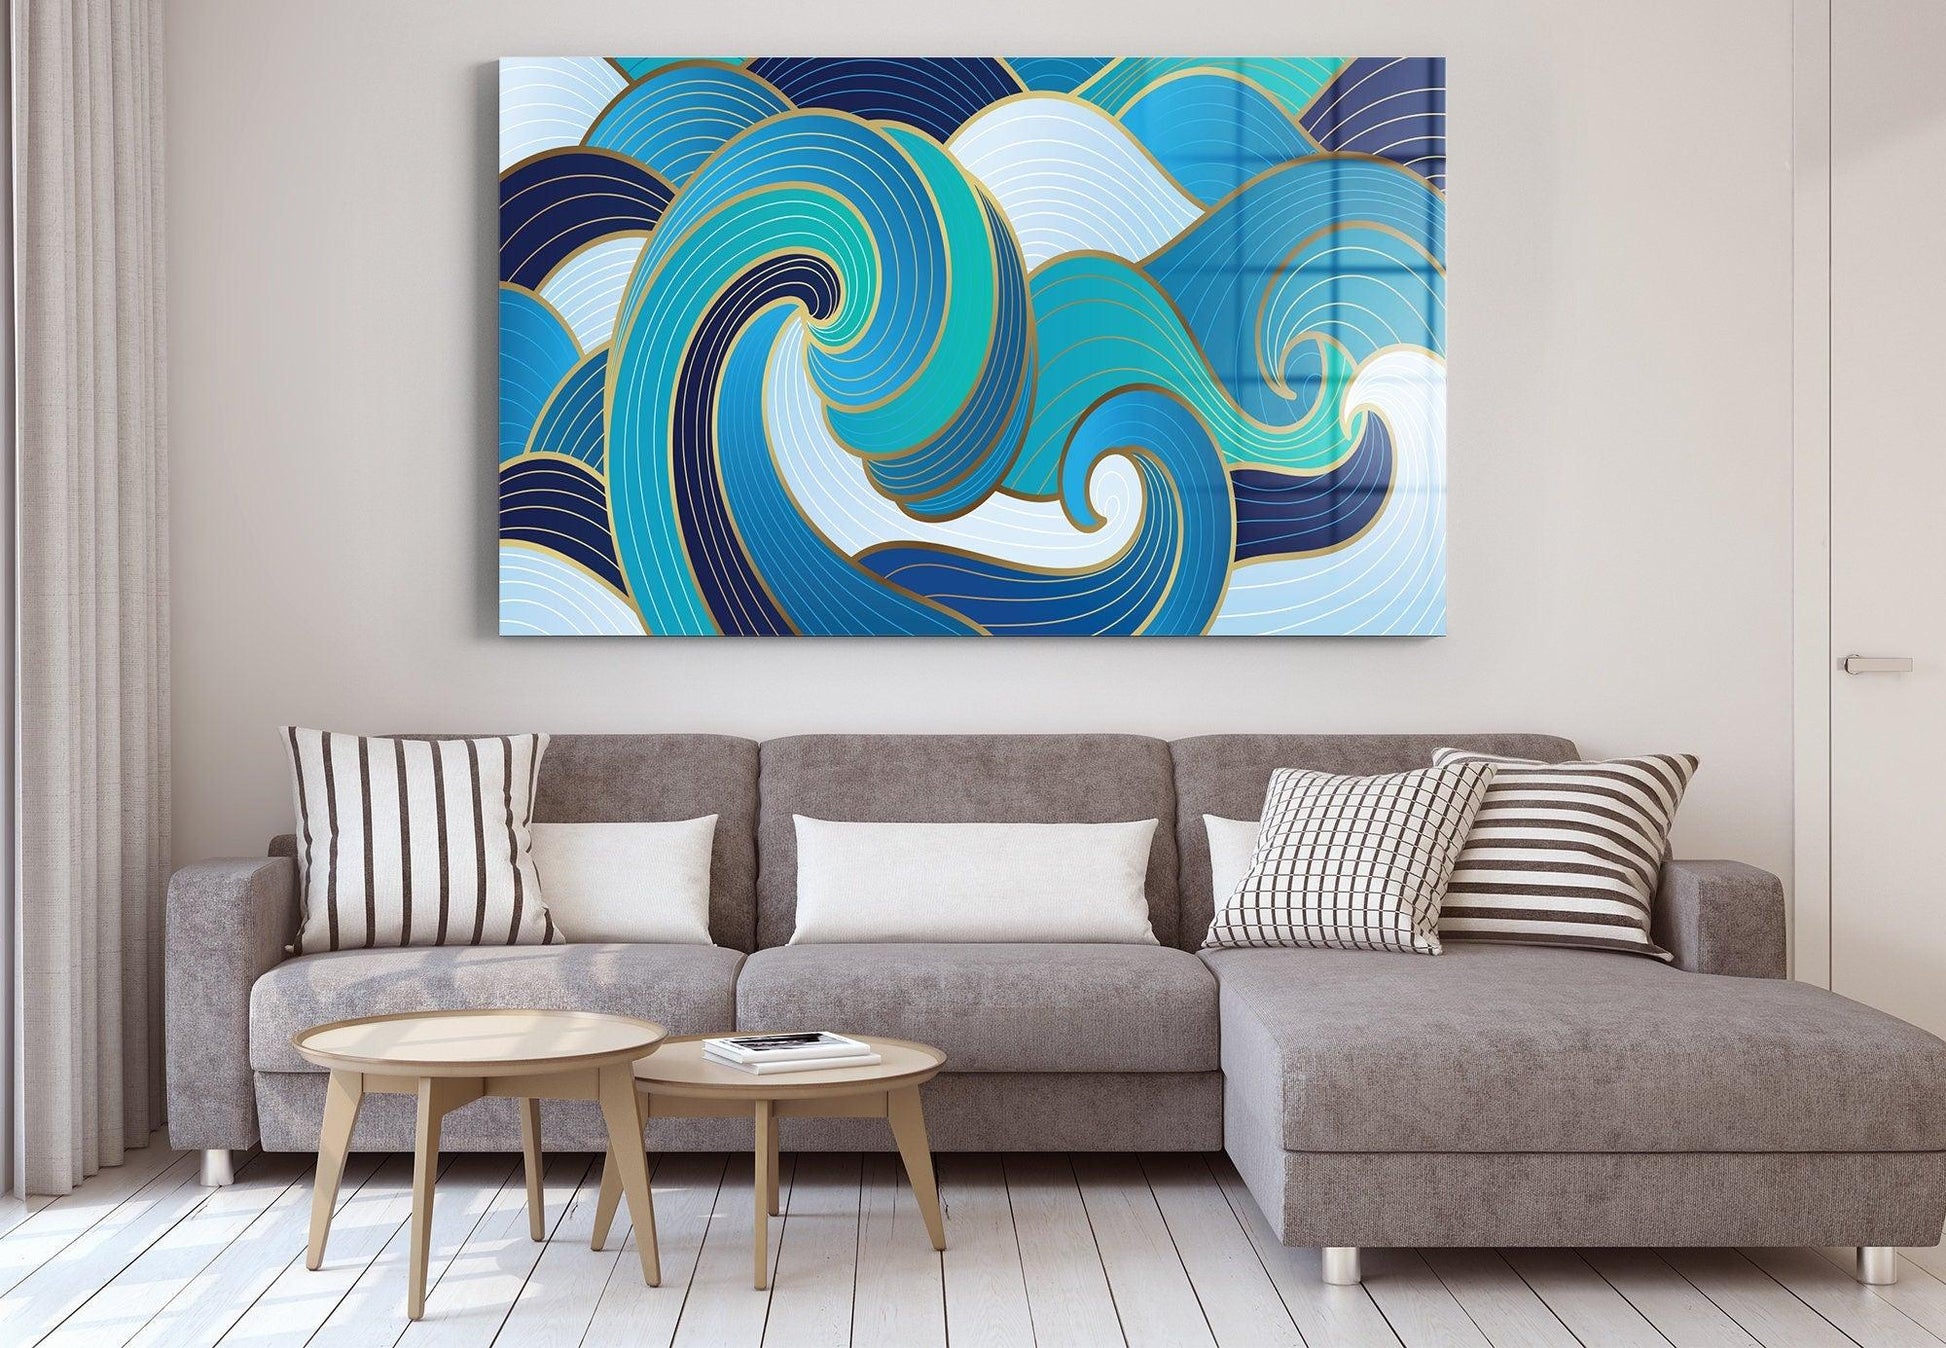 Modern Surf glass wall art| Abstract wave canvas wall decor, abstract Wave glass decor, Abstract Contemporary wall decor, Modern Decor - TrendiArt